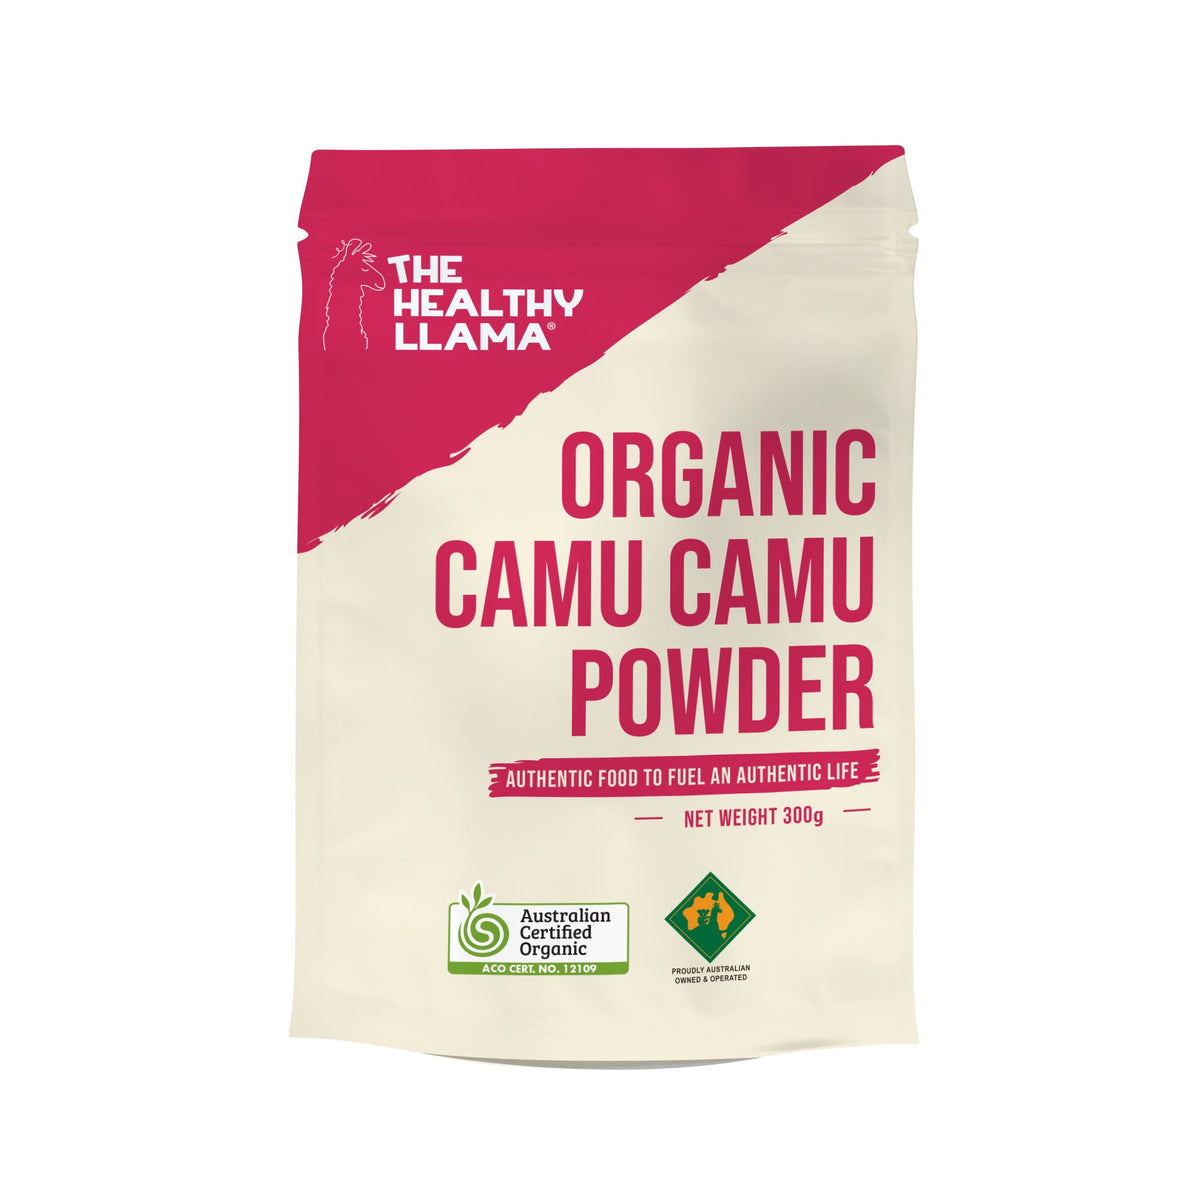 Healthy Llama Camu Camu Powder 300g